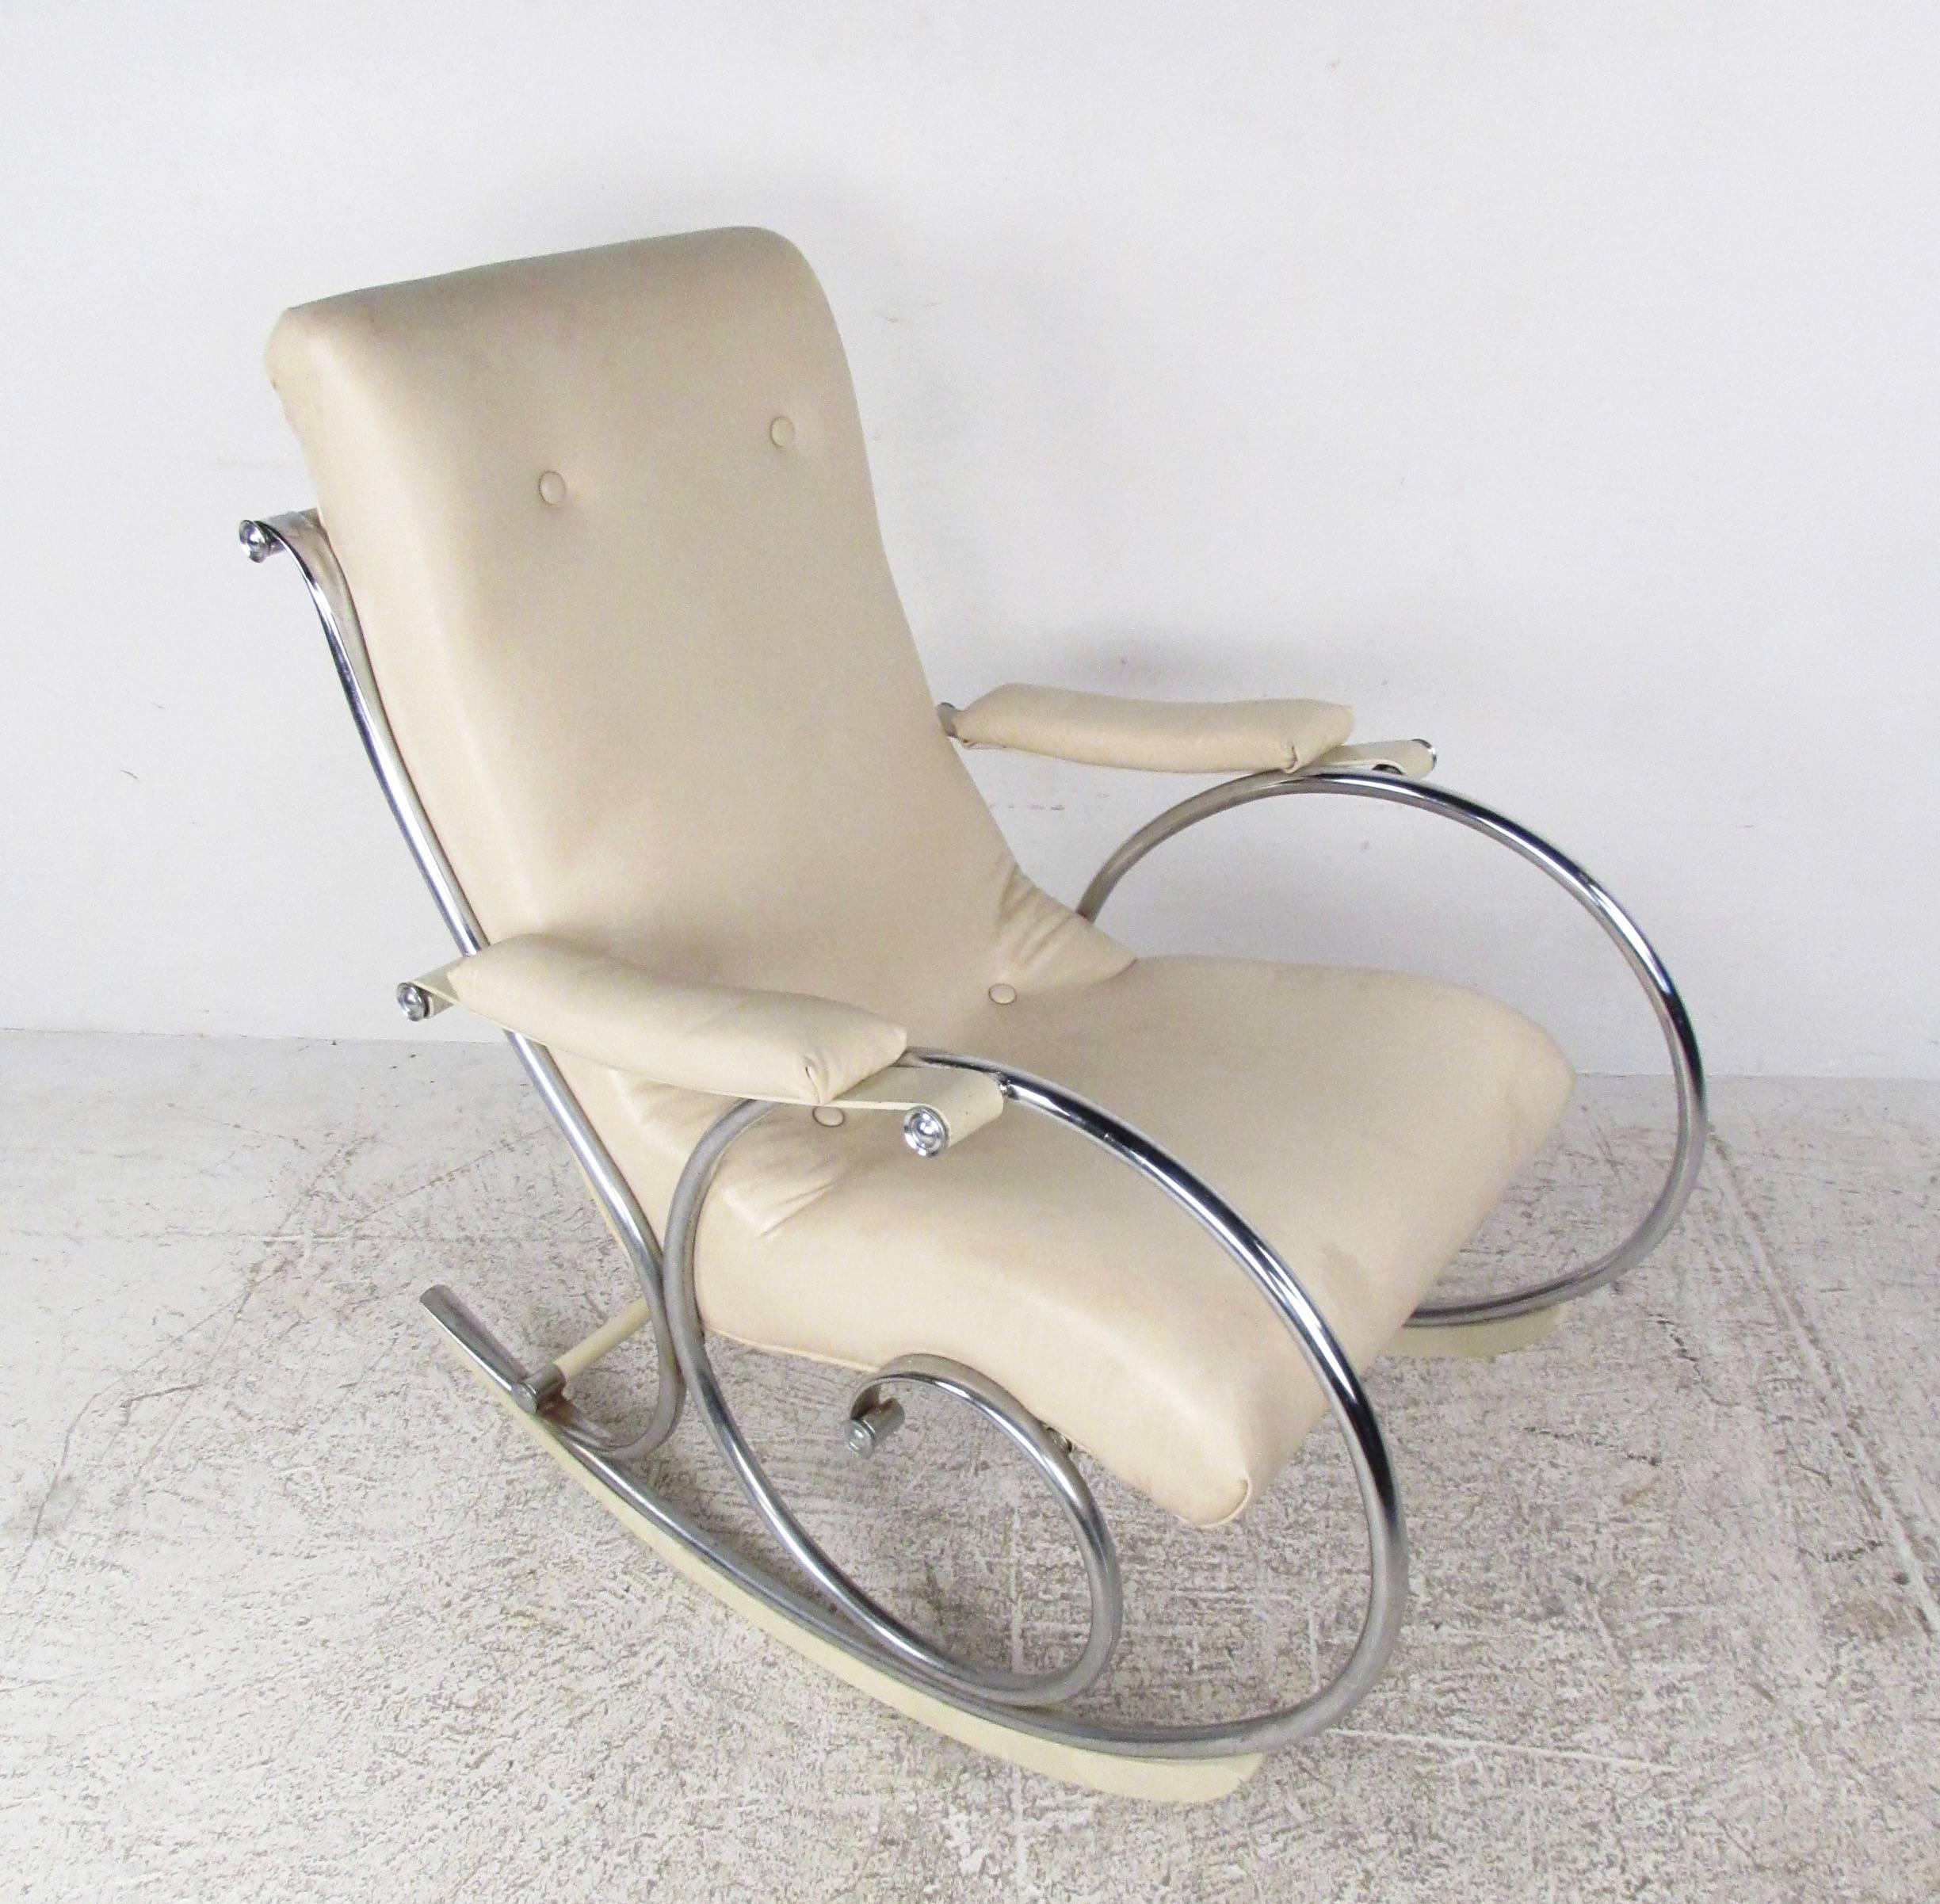 Dieser elegante, moderne Schaukelstuhl verfügt über einen getufteten Vinylsitz mit stilvollem Chromgestell. Die montierten Holzwippen sorgen für eine fließende Schaukelbewegung, während die gepolsterten Armlehnen und die hohe Rückenlehne für